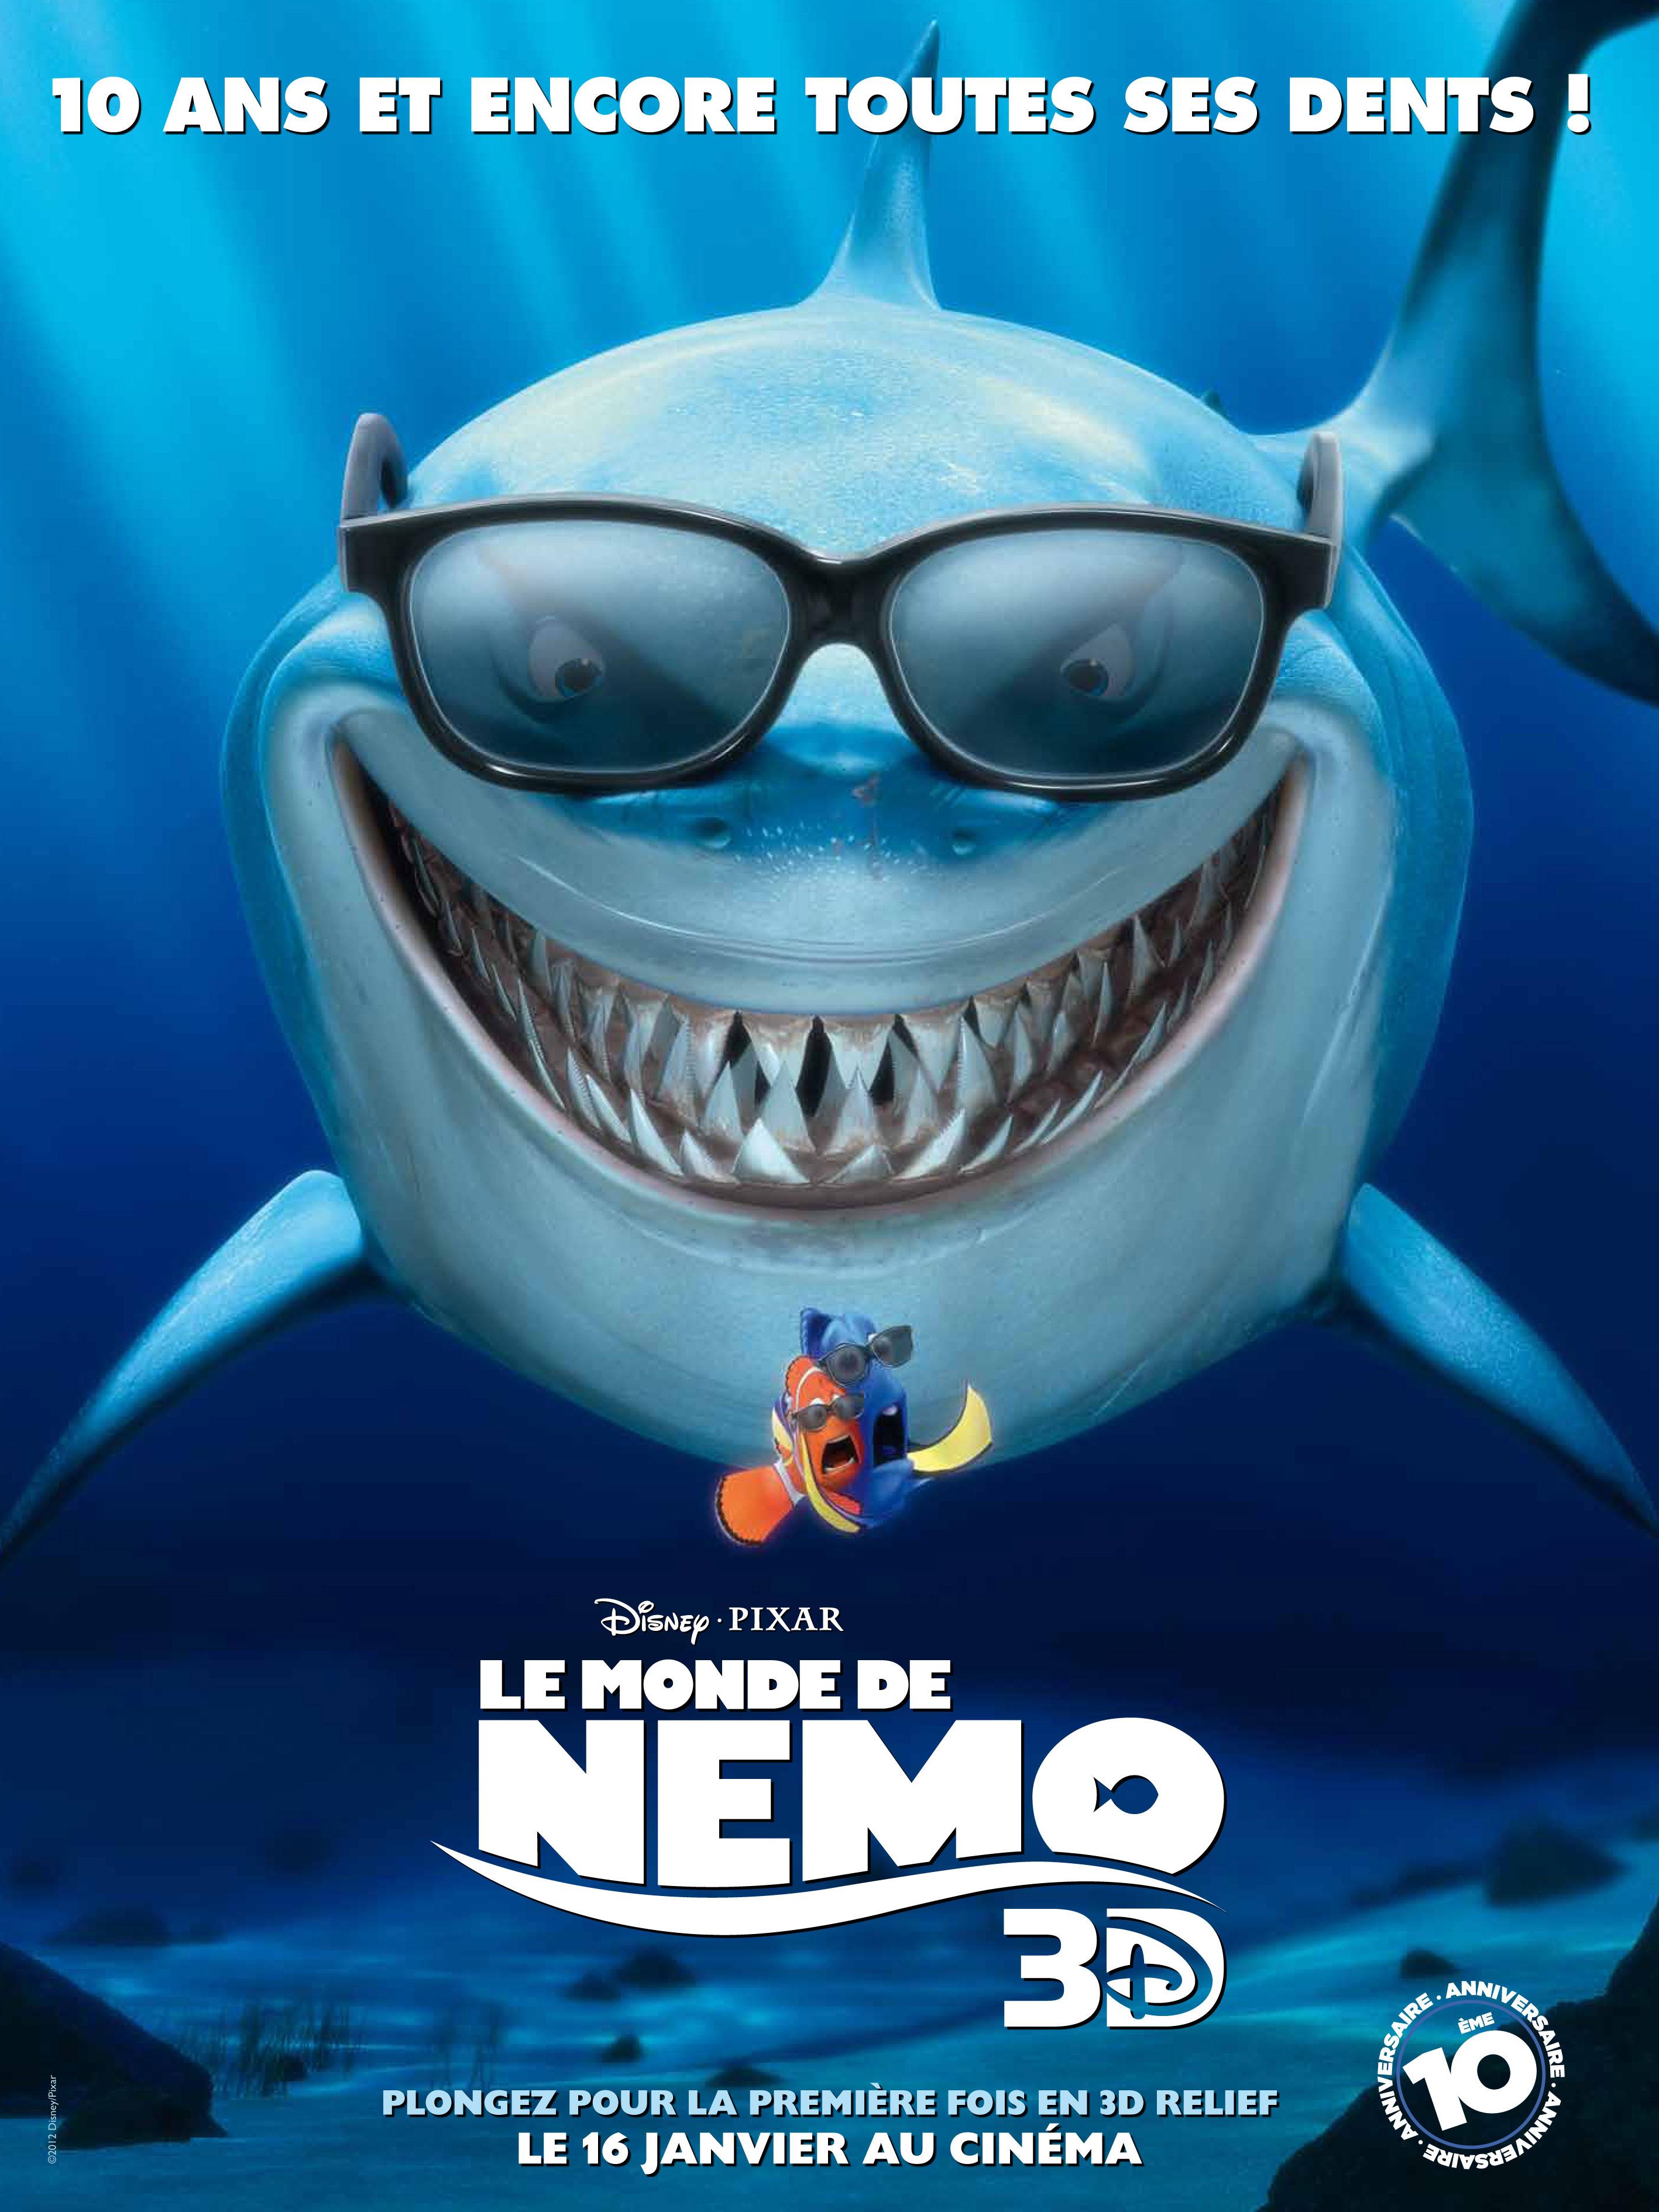 La matinée des enfants: Nemo 3D